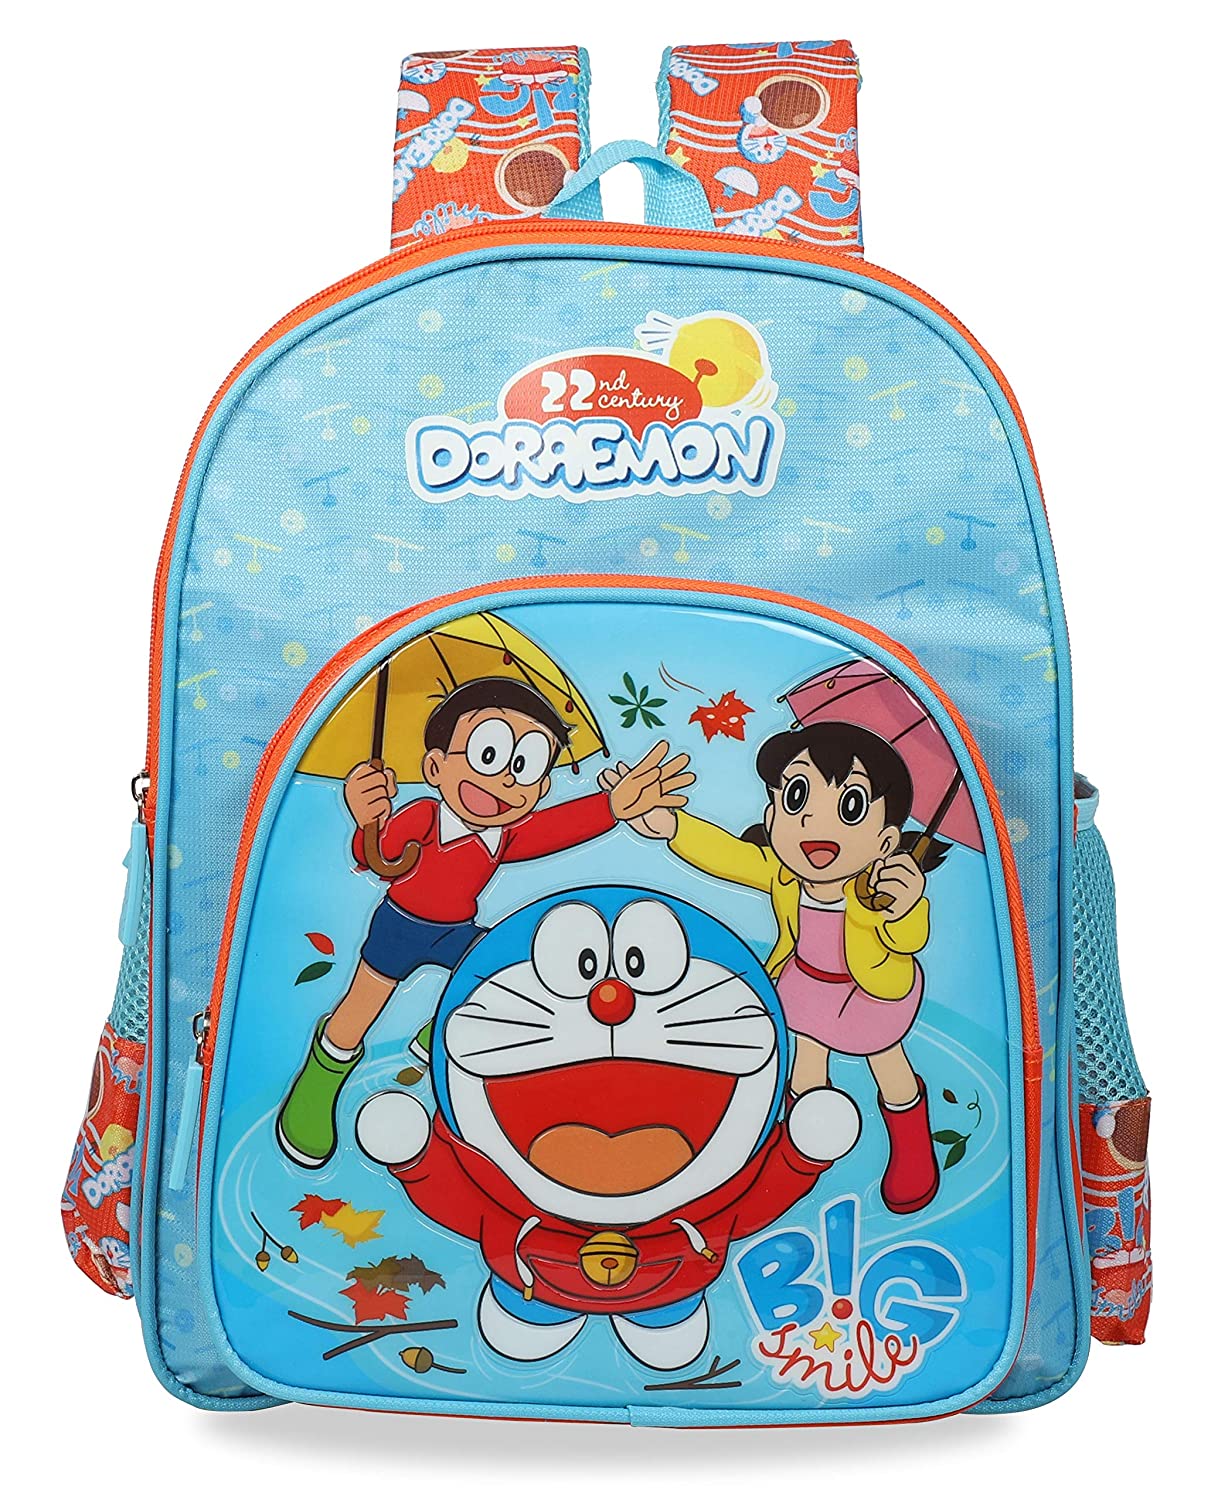 Doraemon x PORTER Bag Collection Release | Hypebeast